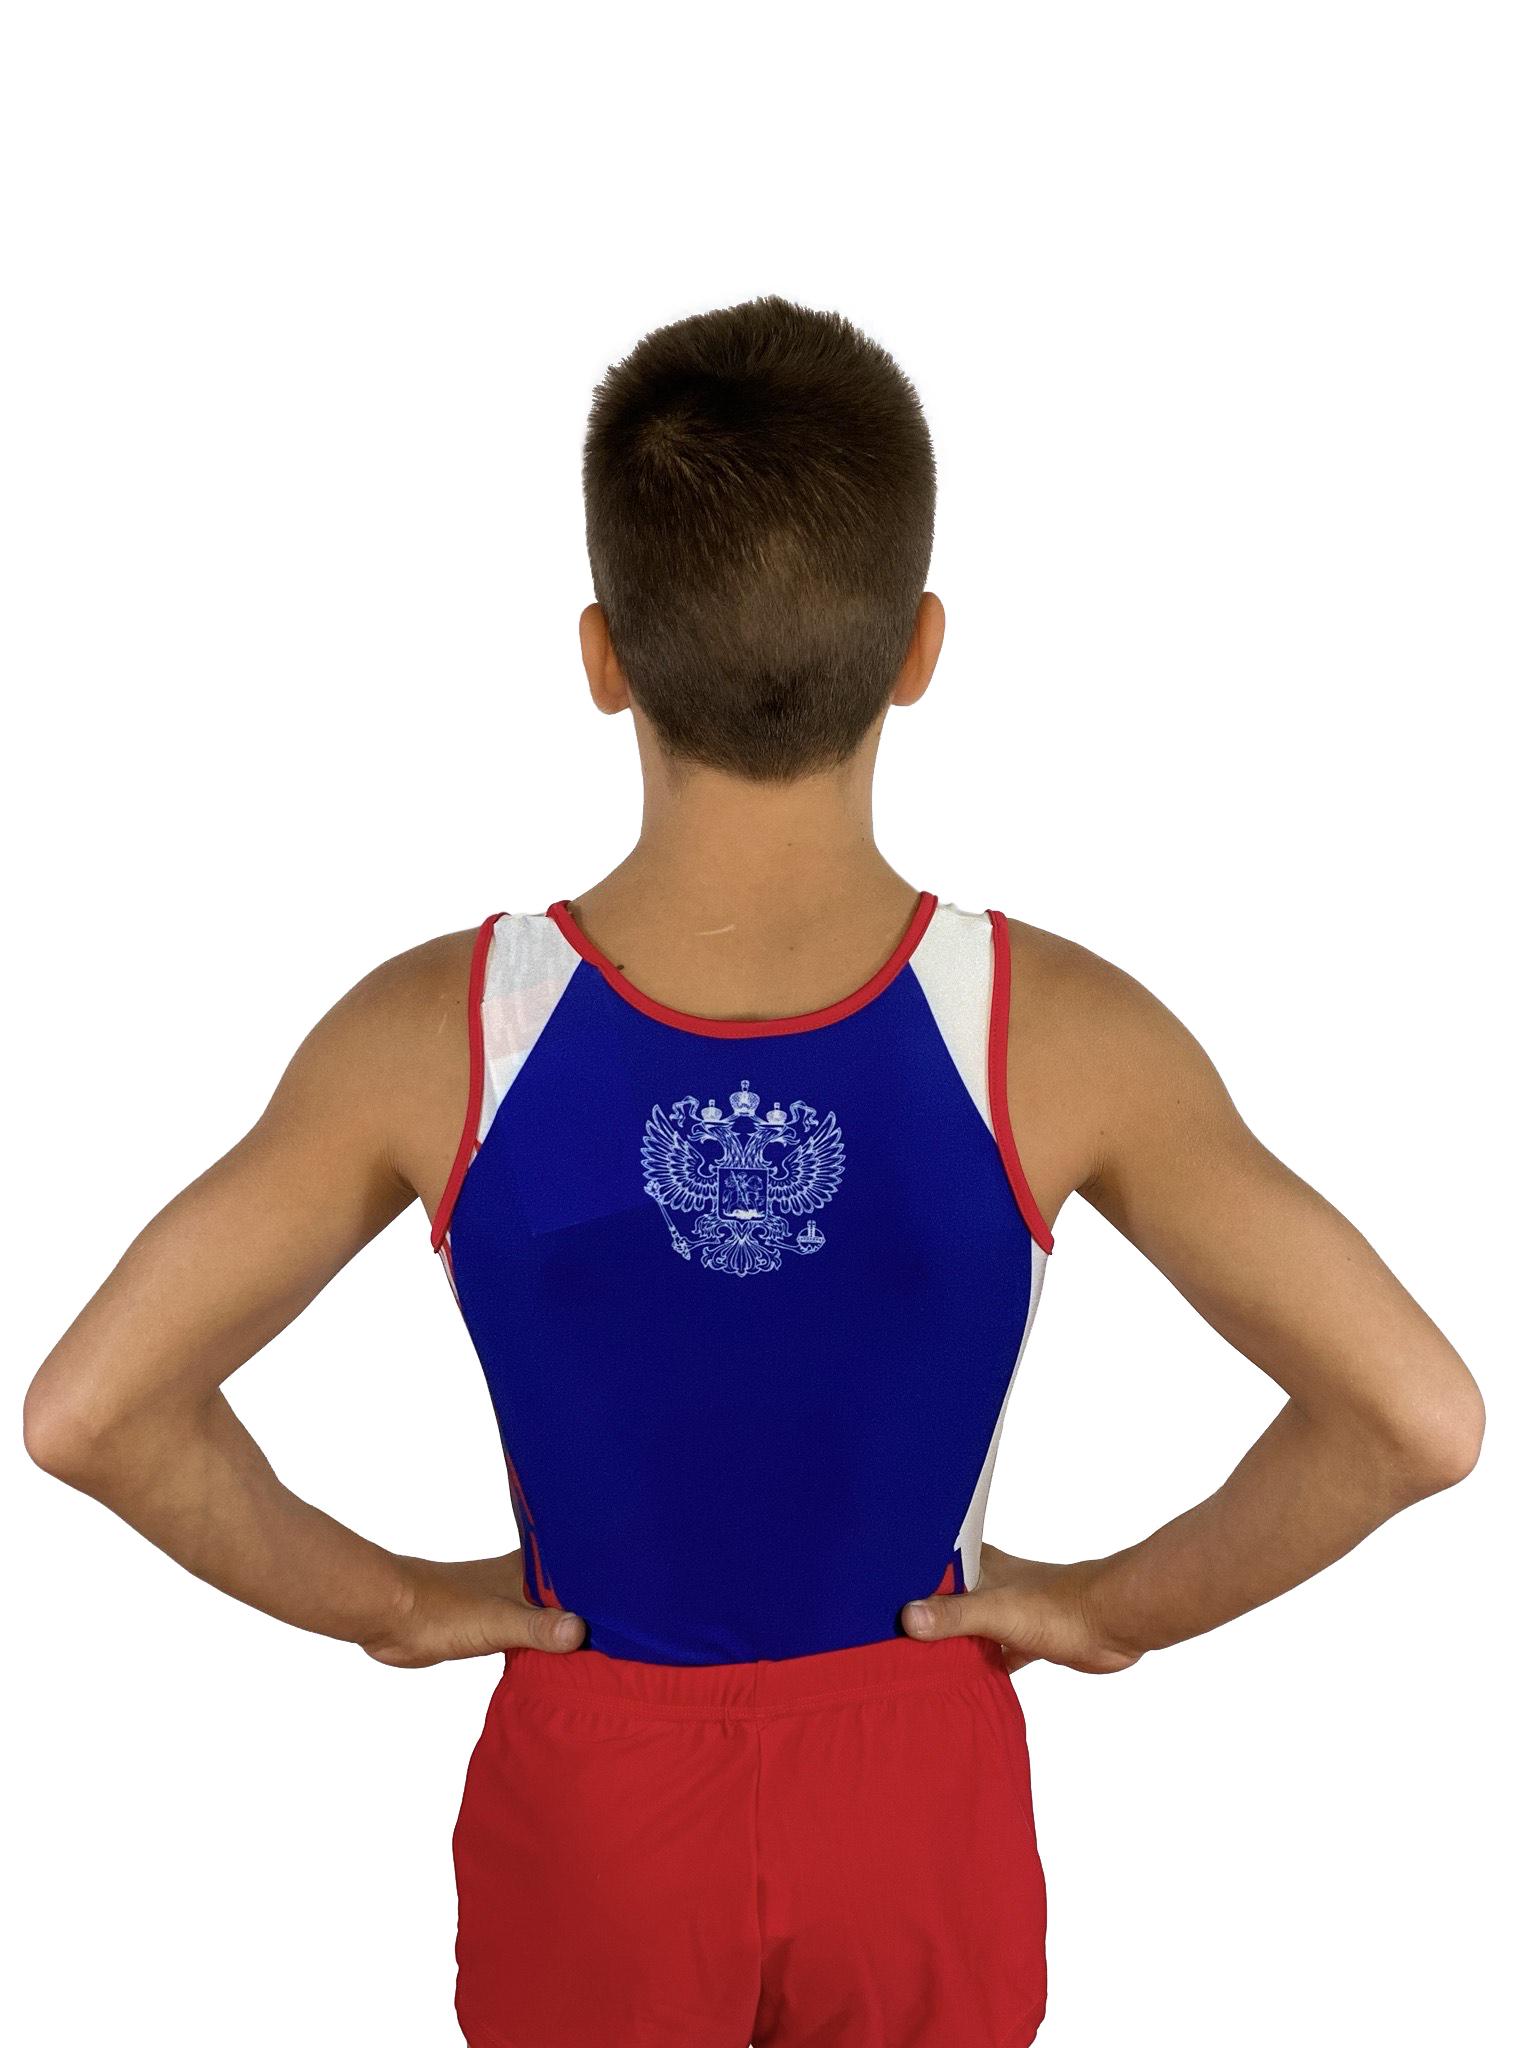 Купальник мужской для спортивной гимнастики GK Sport 201-9 белый с красно-синим рисунком без рукава